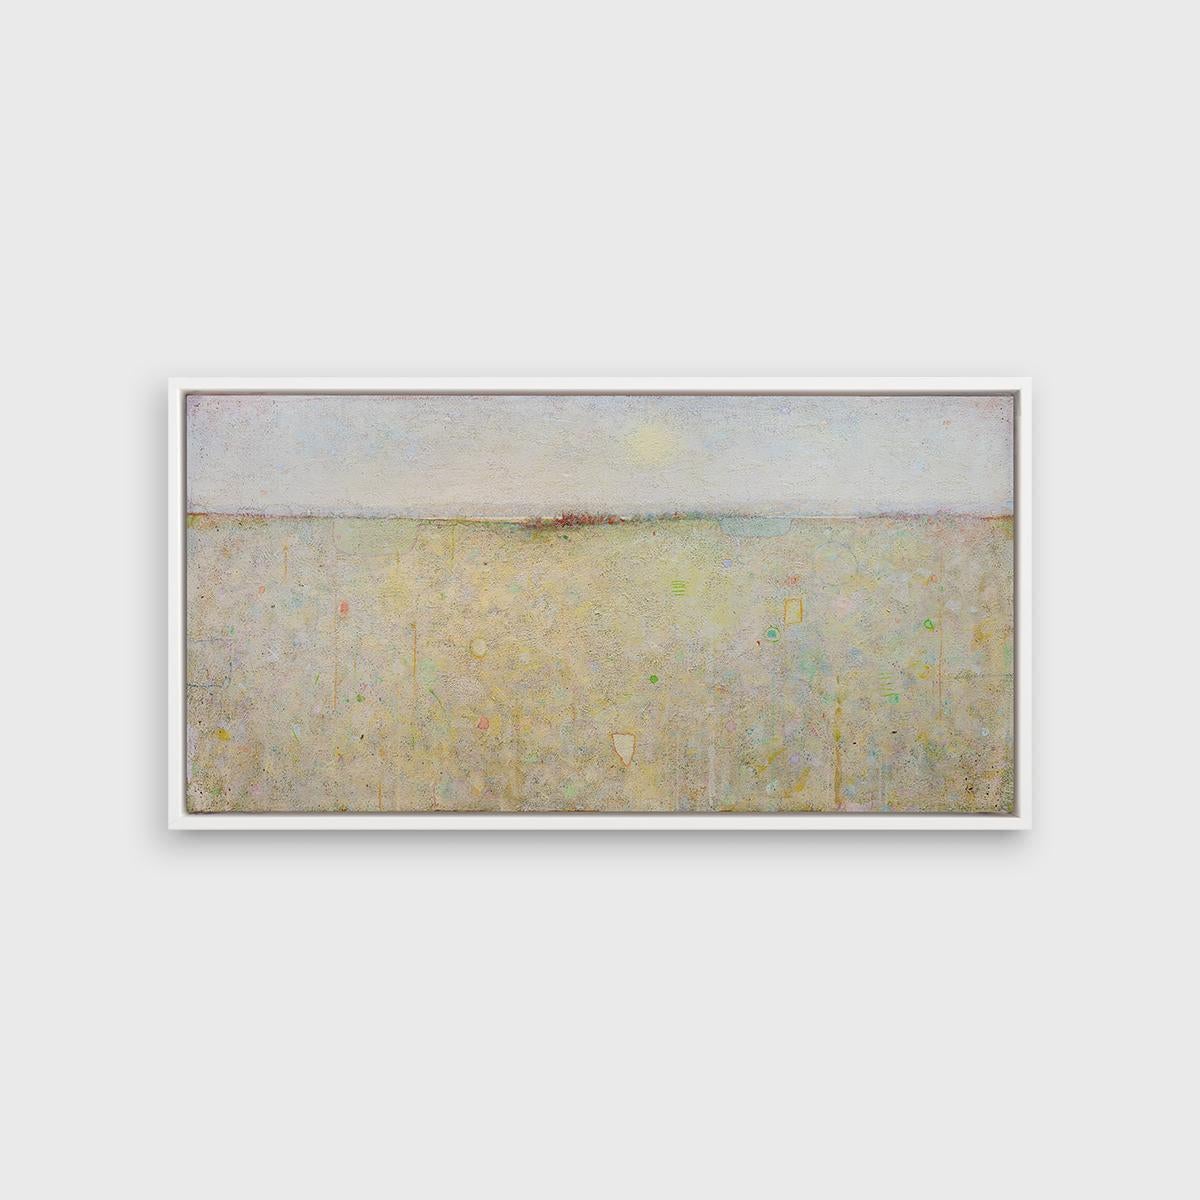 Ce paysage abstrait imprimé en édition limitée par Elwood Howell présente une palette neutre et fraîche. La pièce présente la ligne d'horizon élevée caractéristique des artistes, avec des formes et des traits superposés en dessous qui permettent à